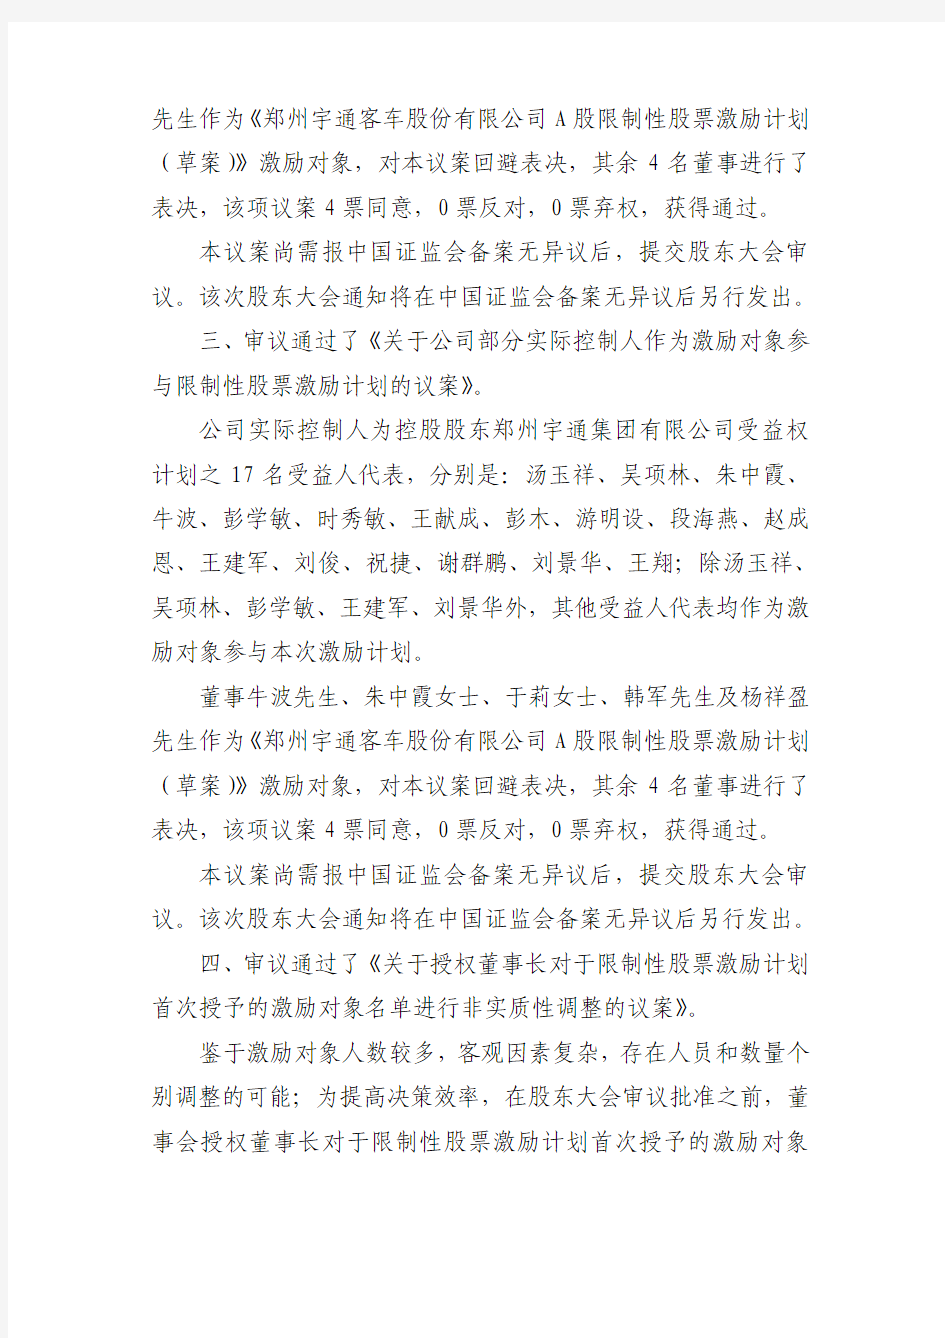 郑州宇通客车股份有限公司 第七届董事会第十五次会惸决惸公告